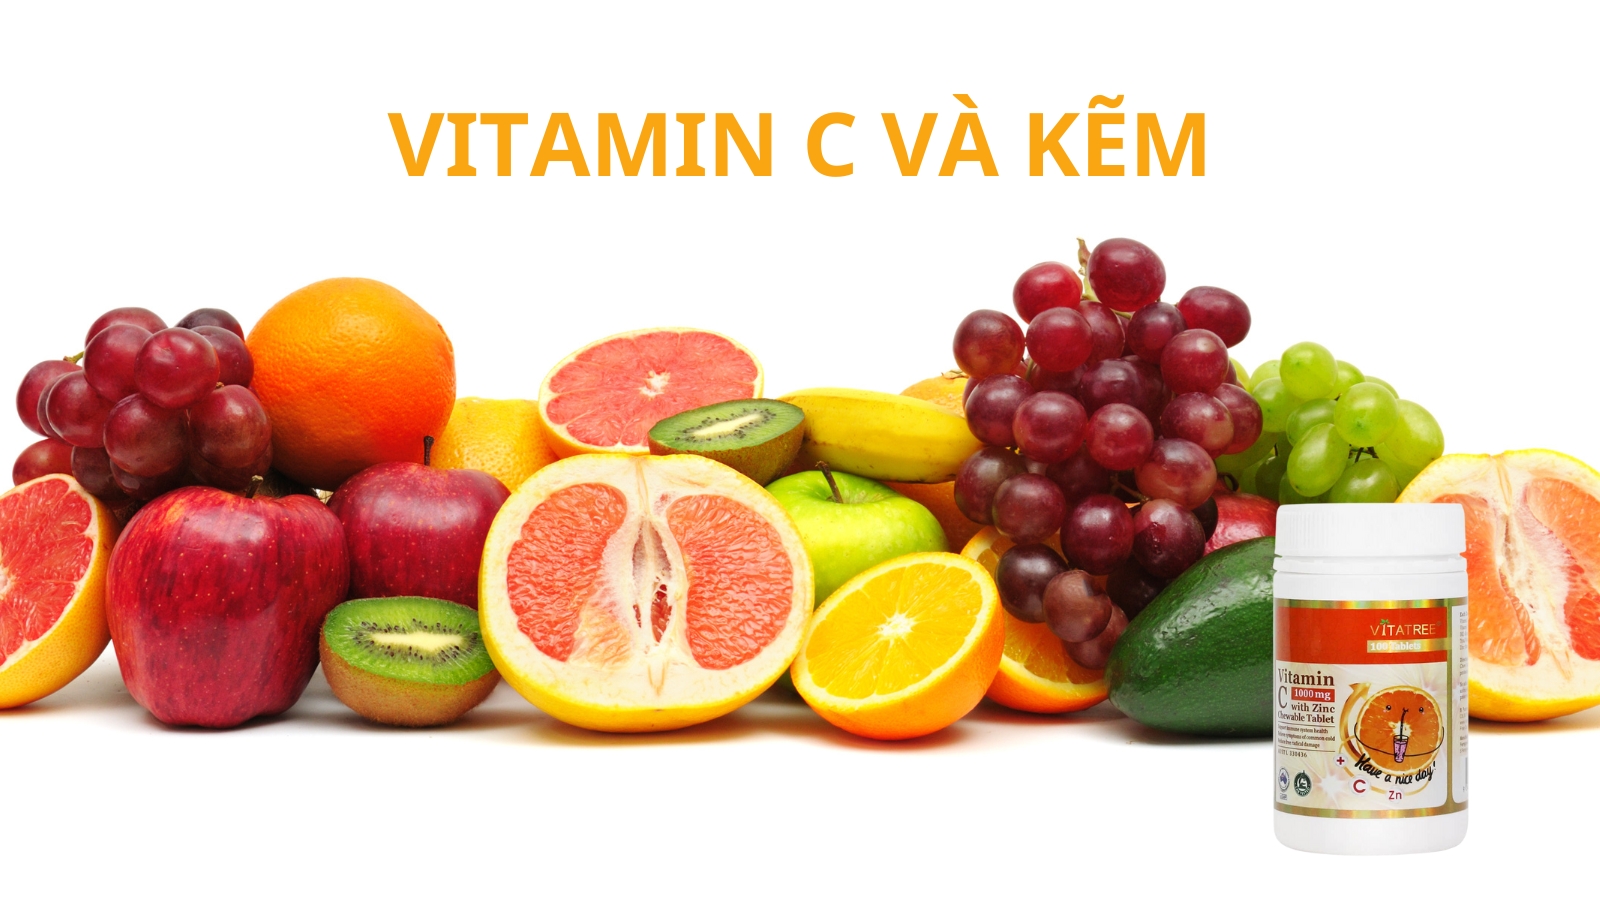 Vitamin C kết hợp với Kẽm giúp nâng cao sức đề kháng hiệu quả